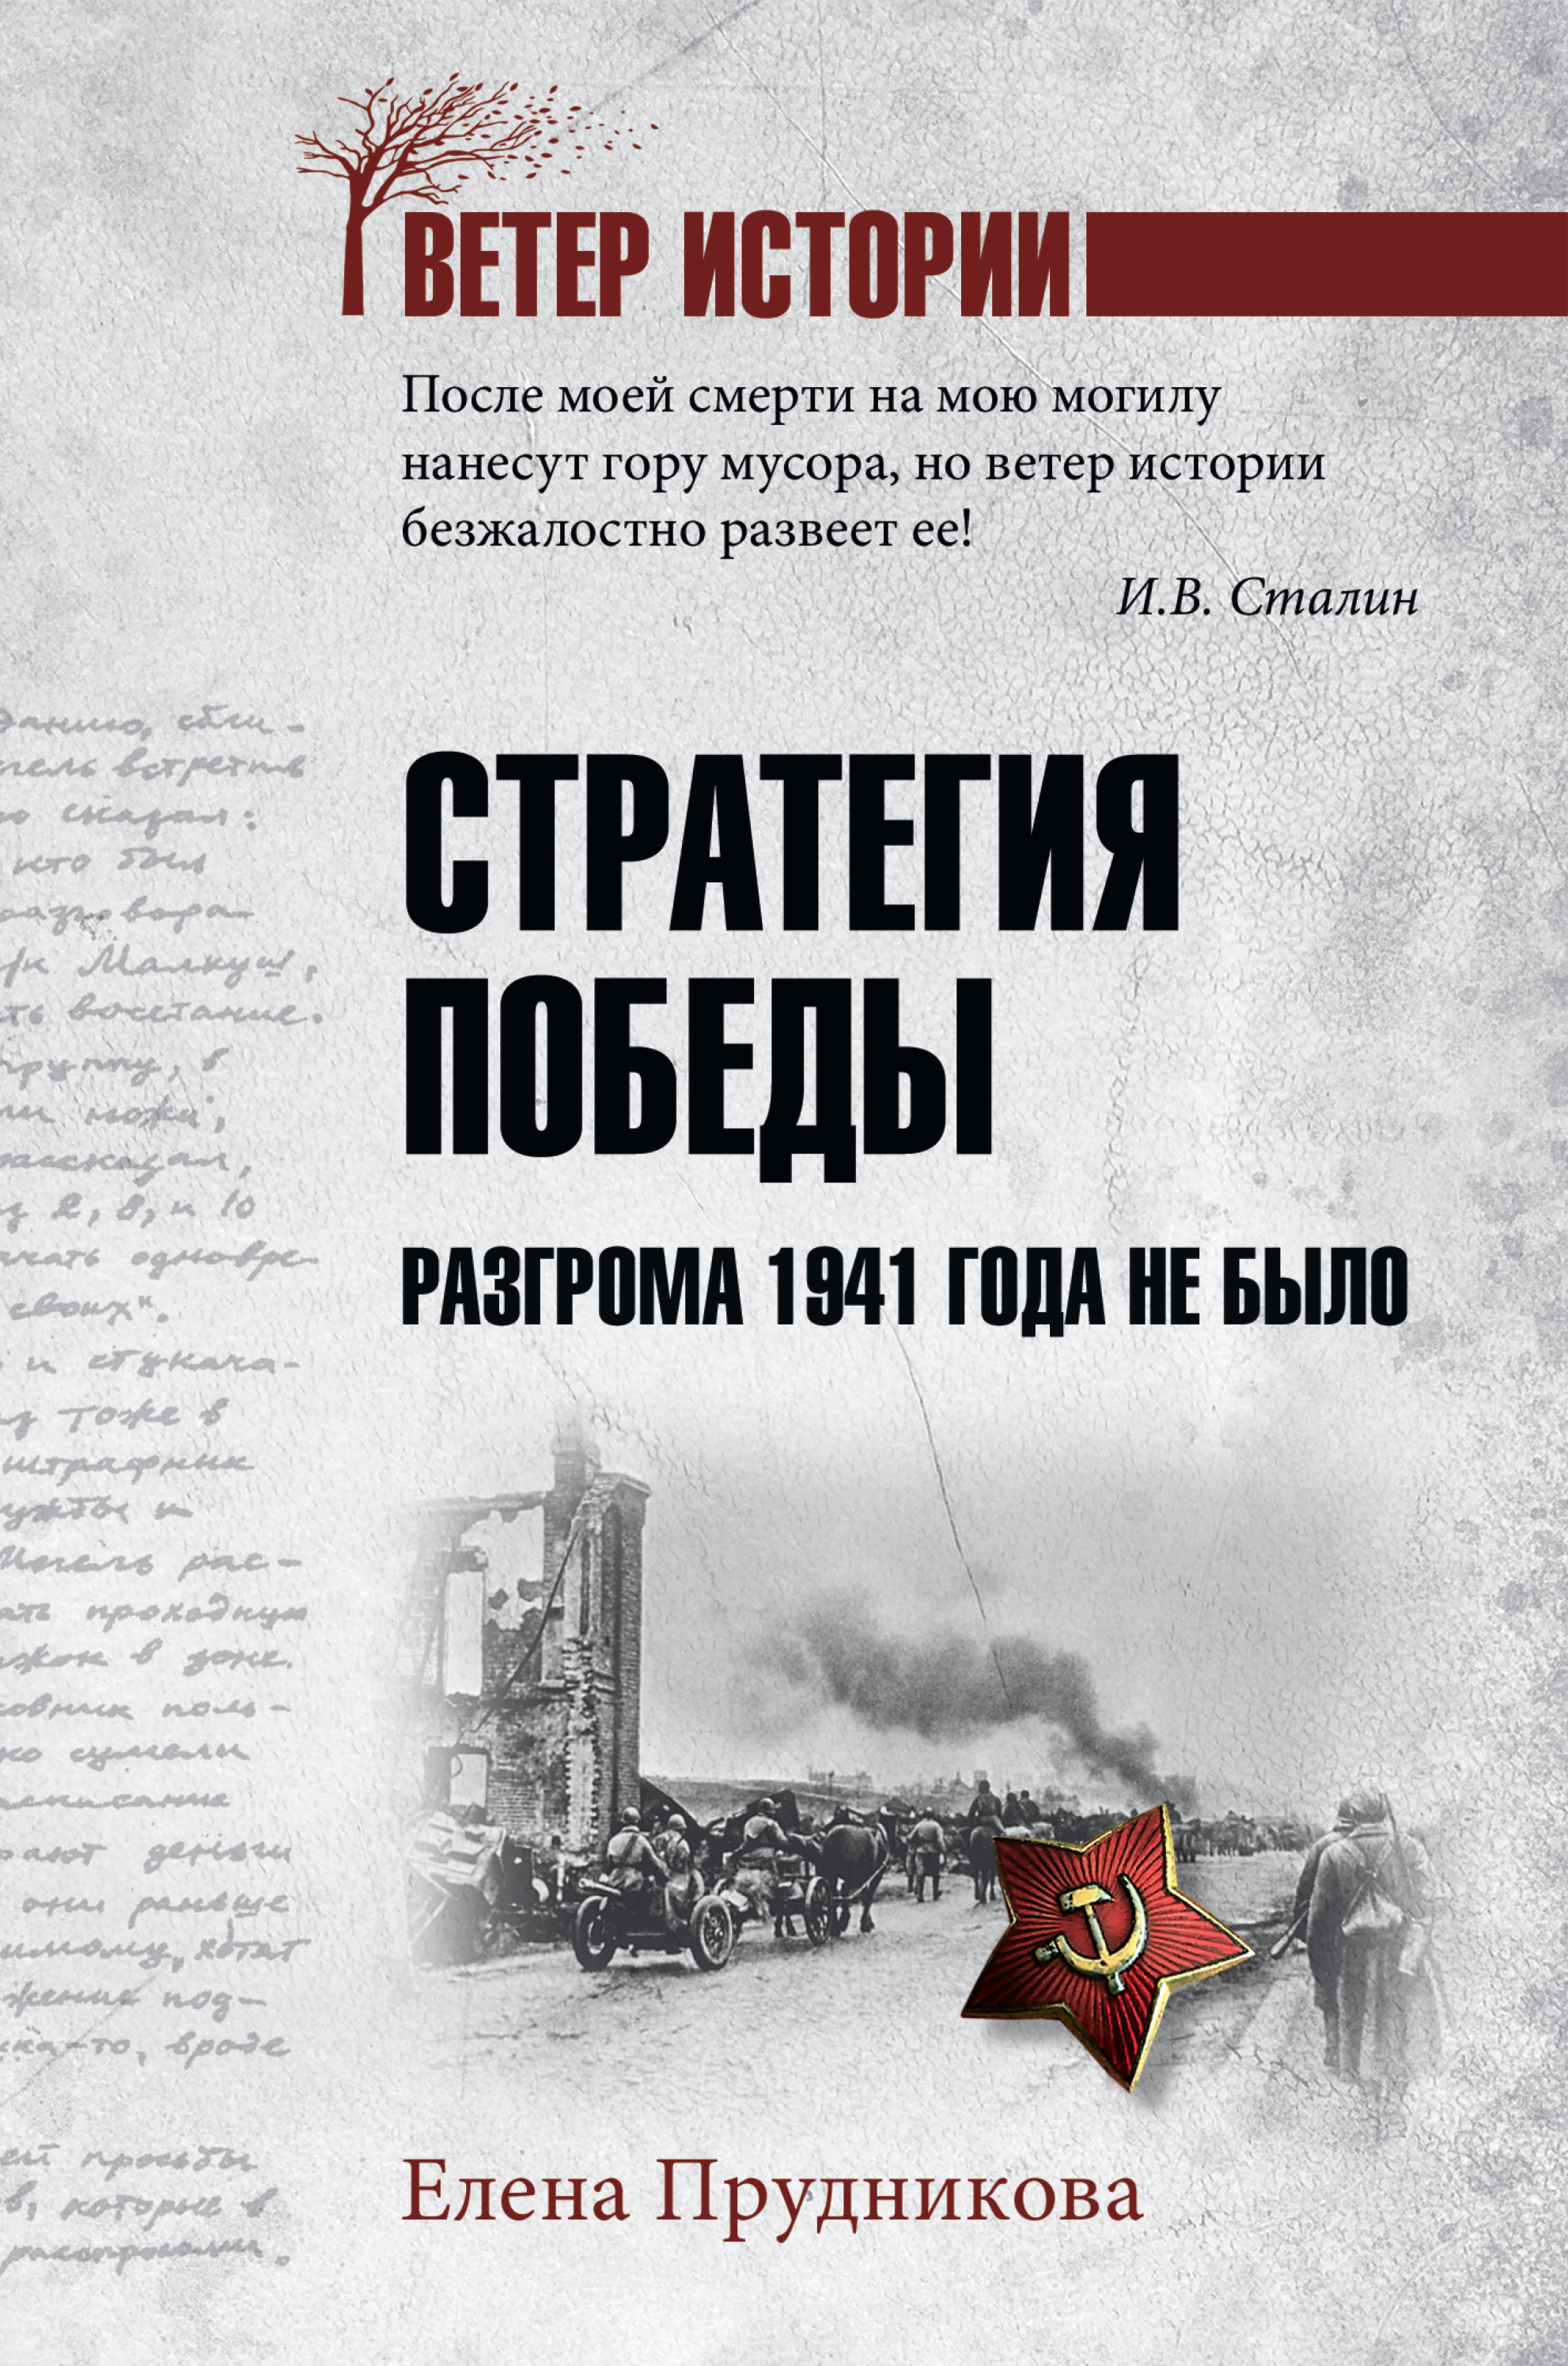 Елена Прудникова, Стратегия победы. Разгрома 1941 года не было – скачать  fb2, epub, pdf на ЛитРес